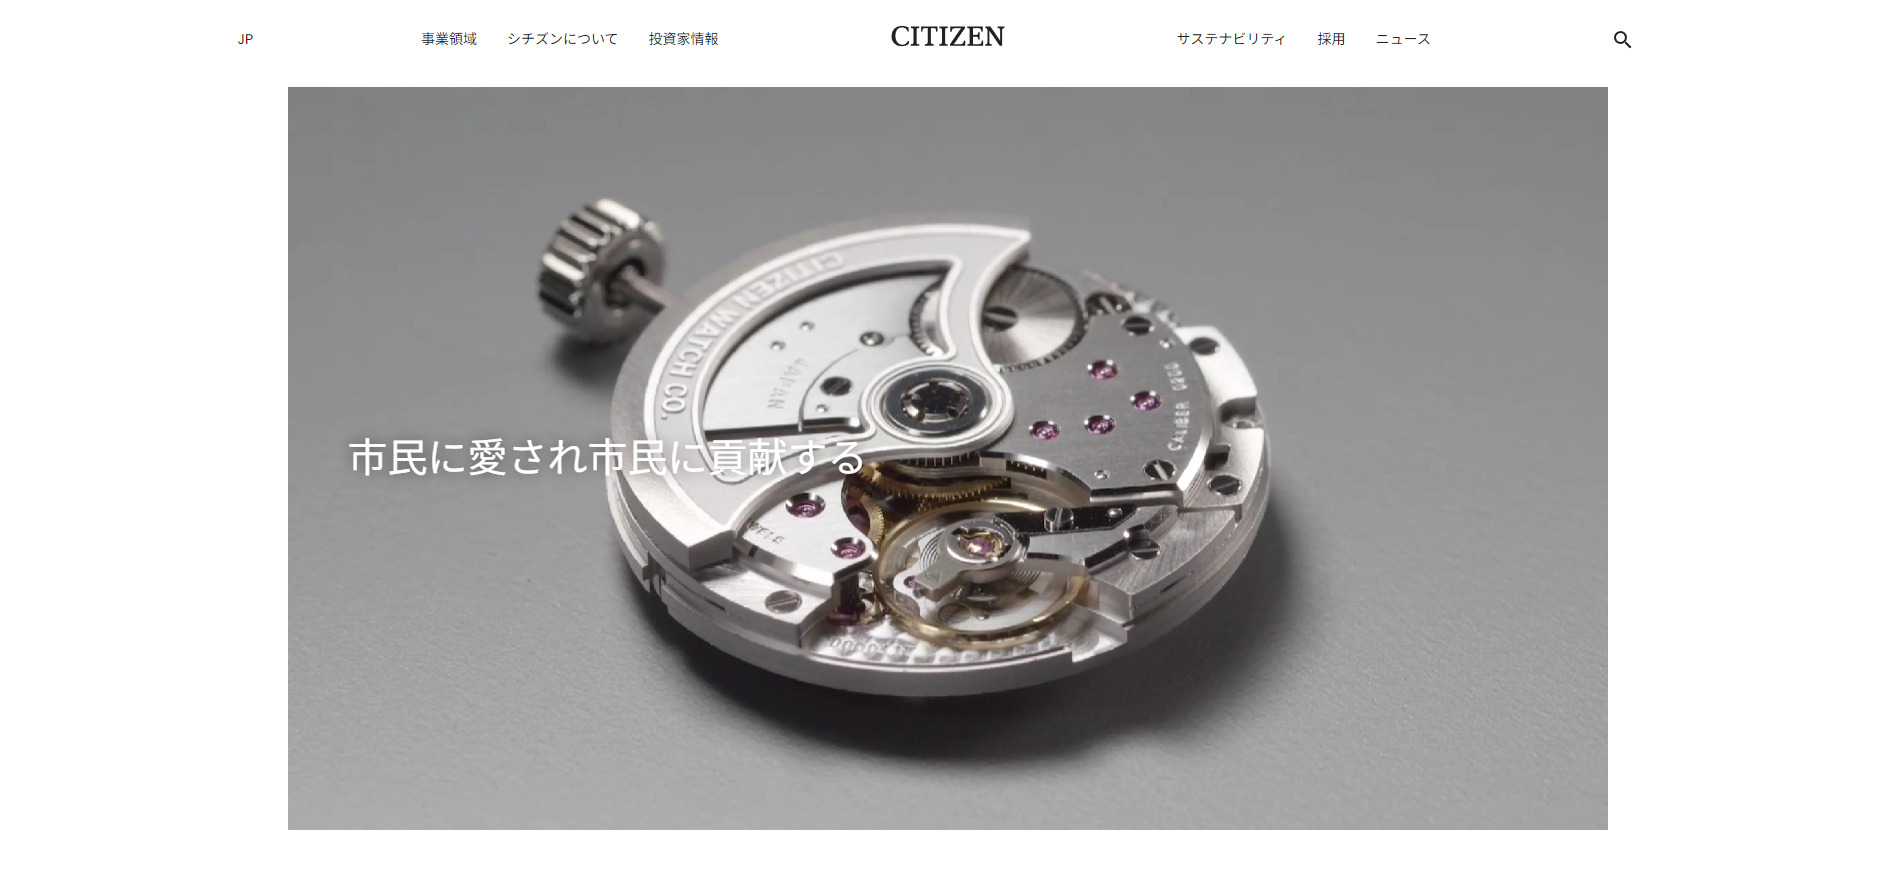 シチズン時計株式会社のサイトページ画面